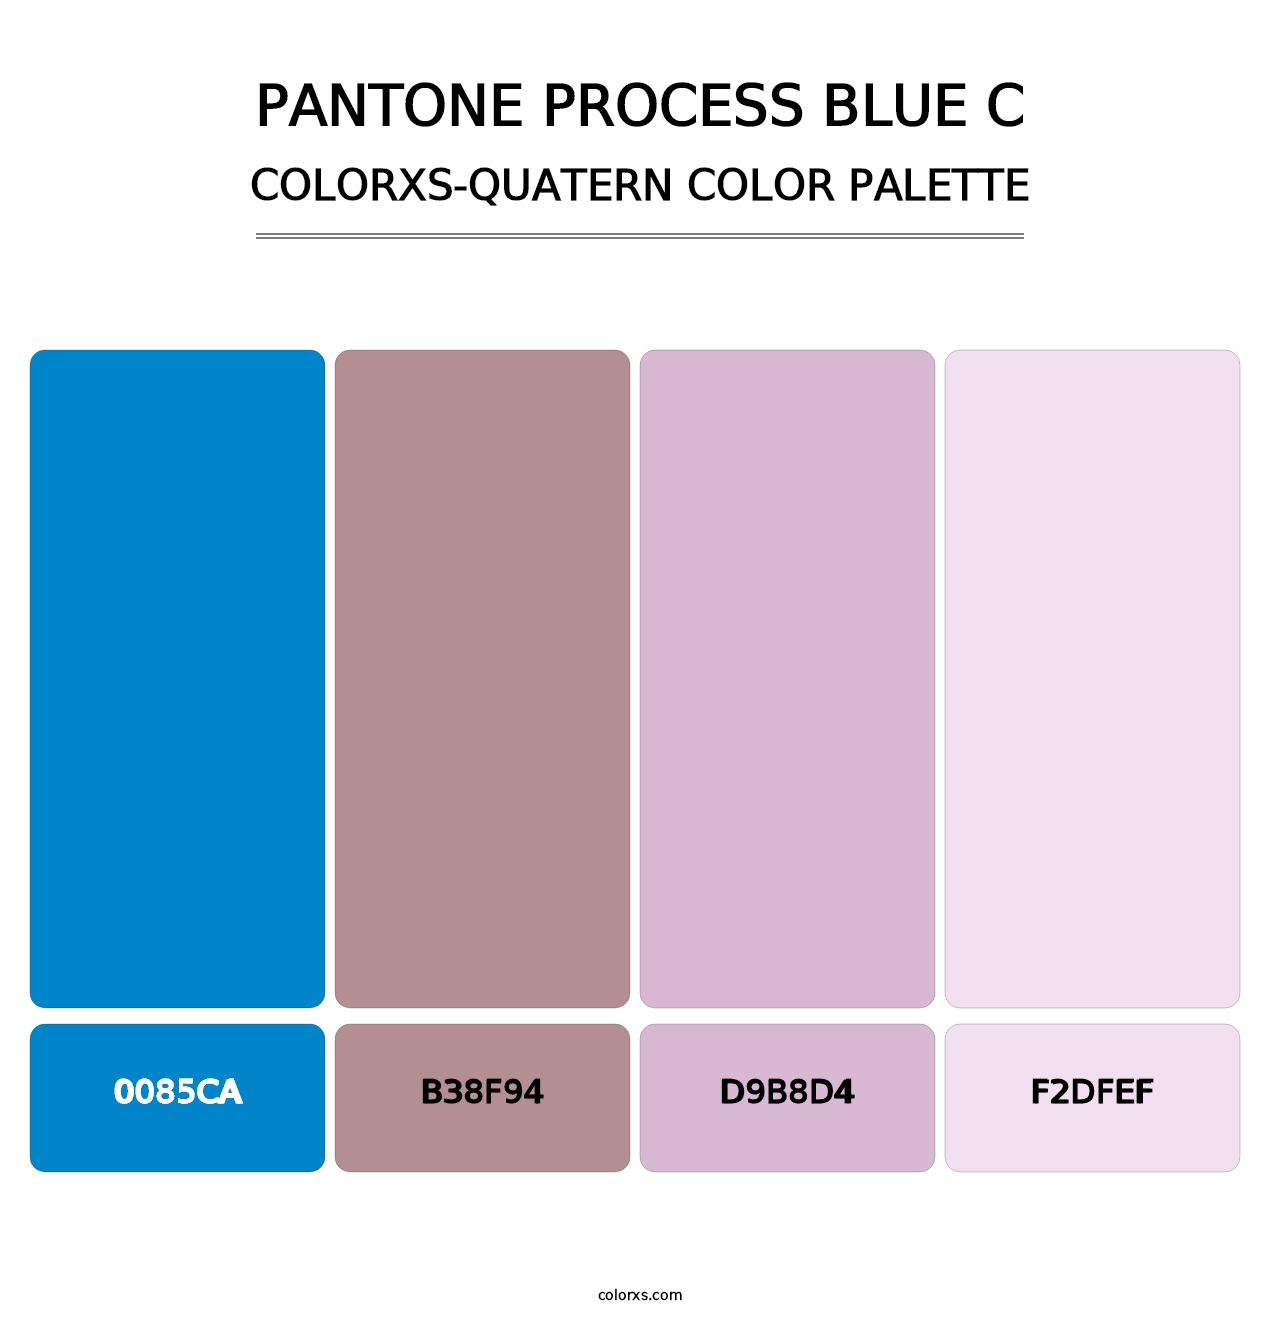 PANTONE Process Blue C - Colorxs Quatern Palette